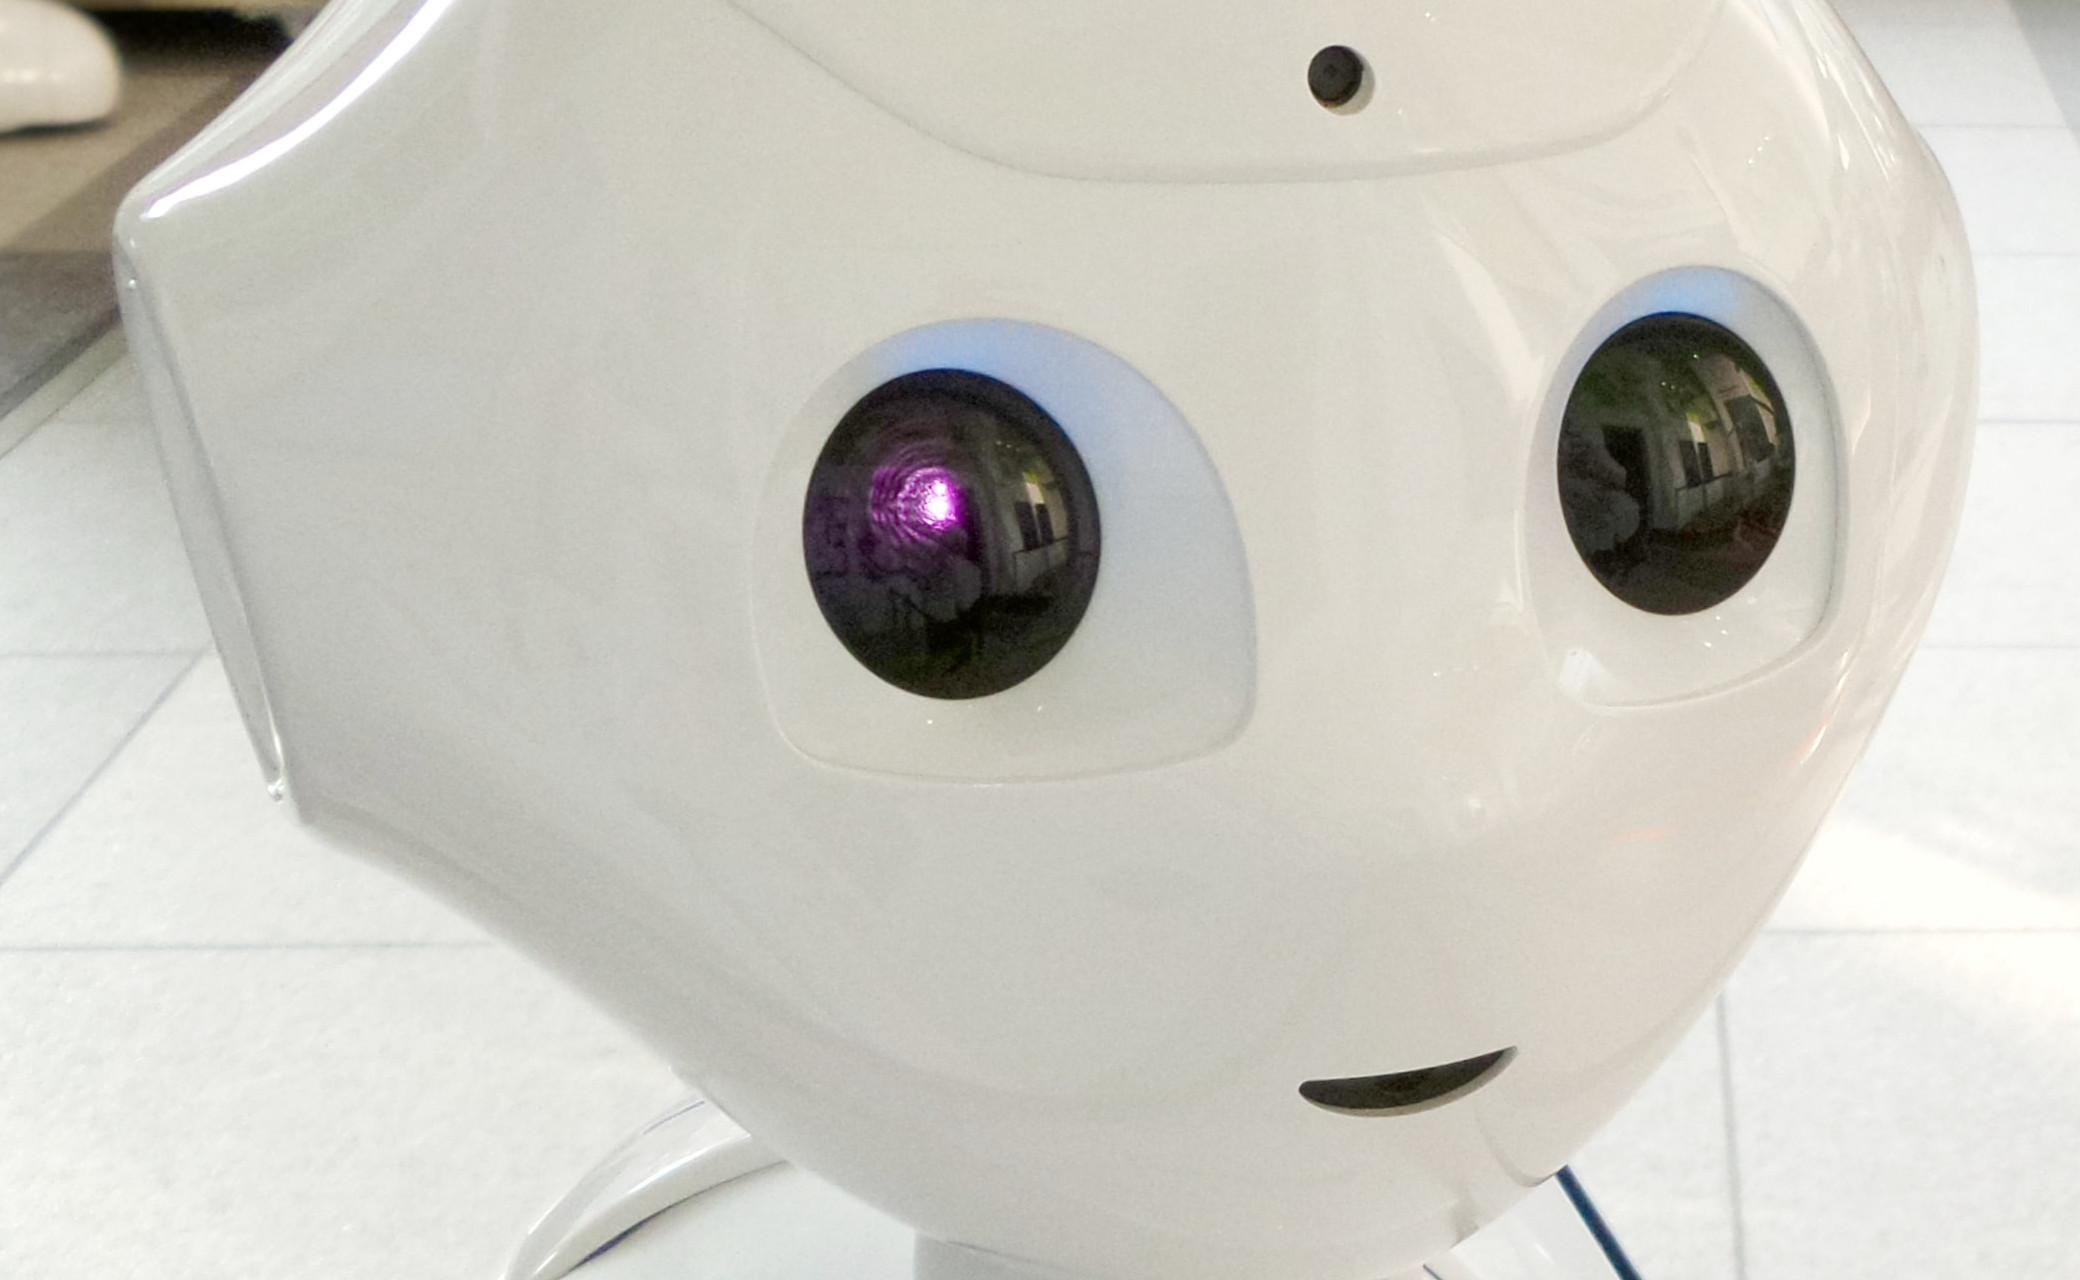 Imagem do rosto de um robô para dar a ideia de visão computacional.